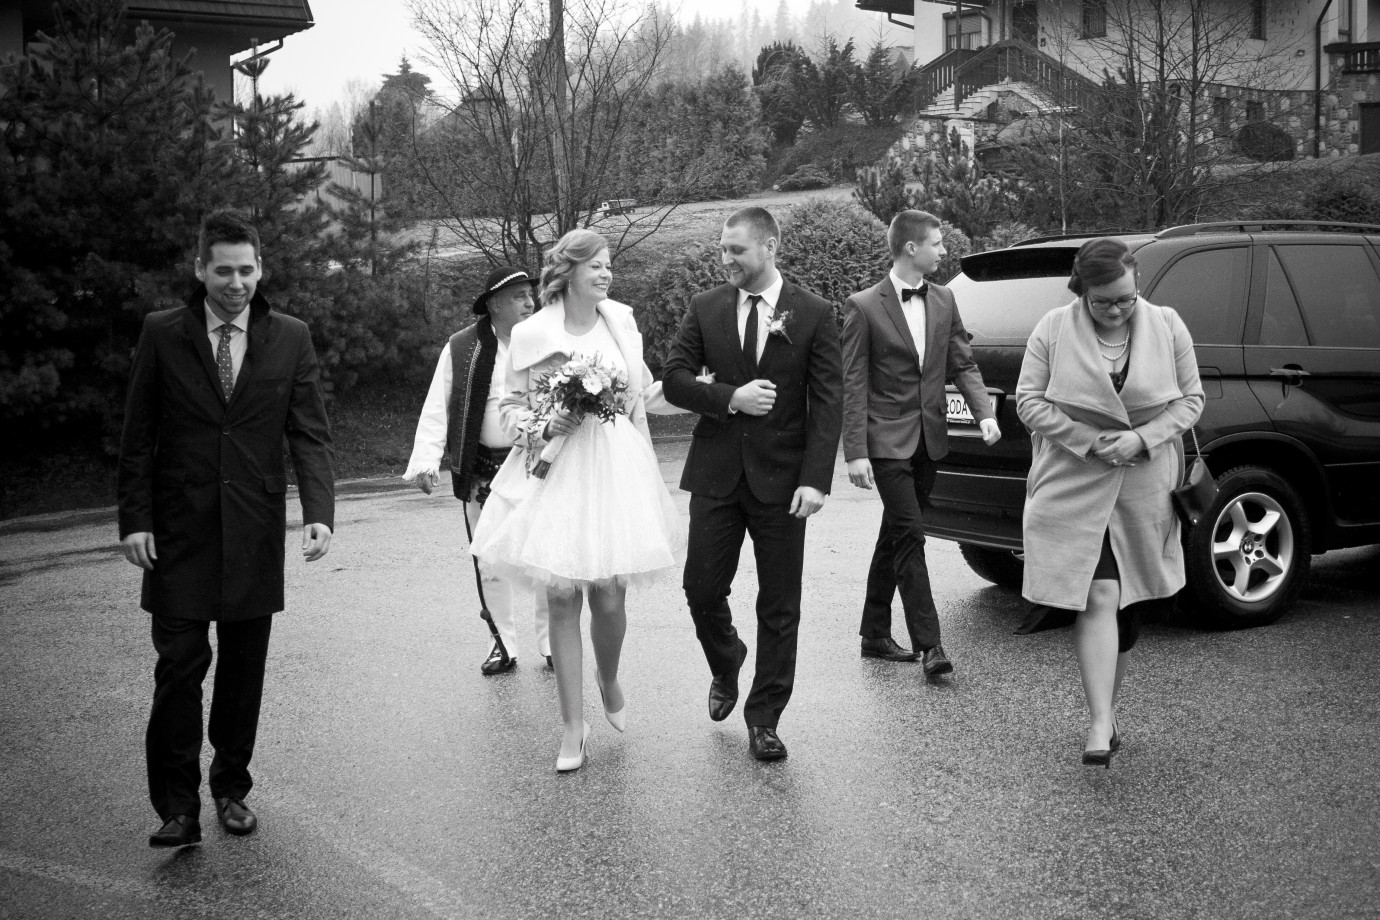 zdjęcia katowice fotograf tomasz-budek portfolio zdjecia slubne inspiracje wesele plener slubny sesja slubna